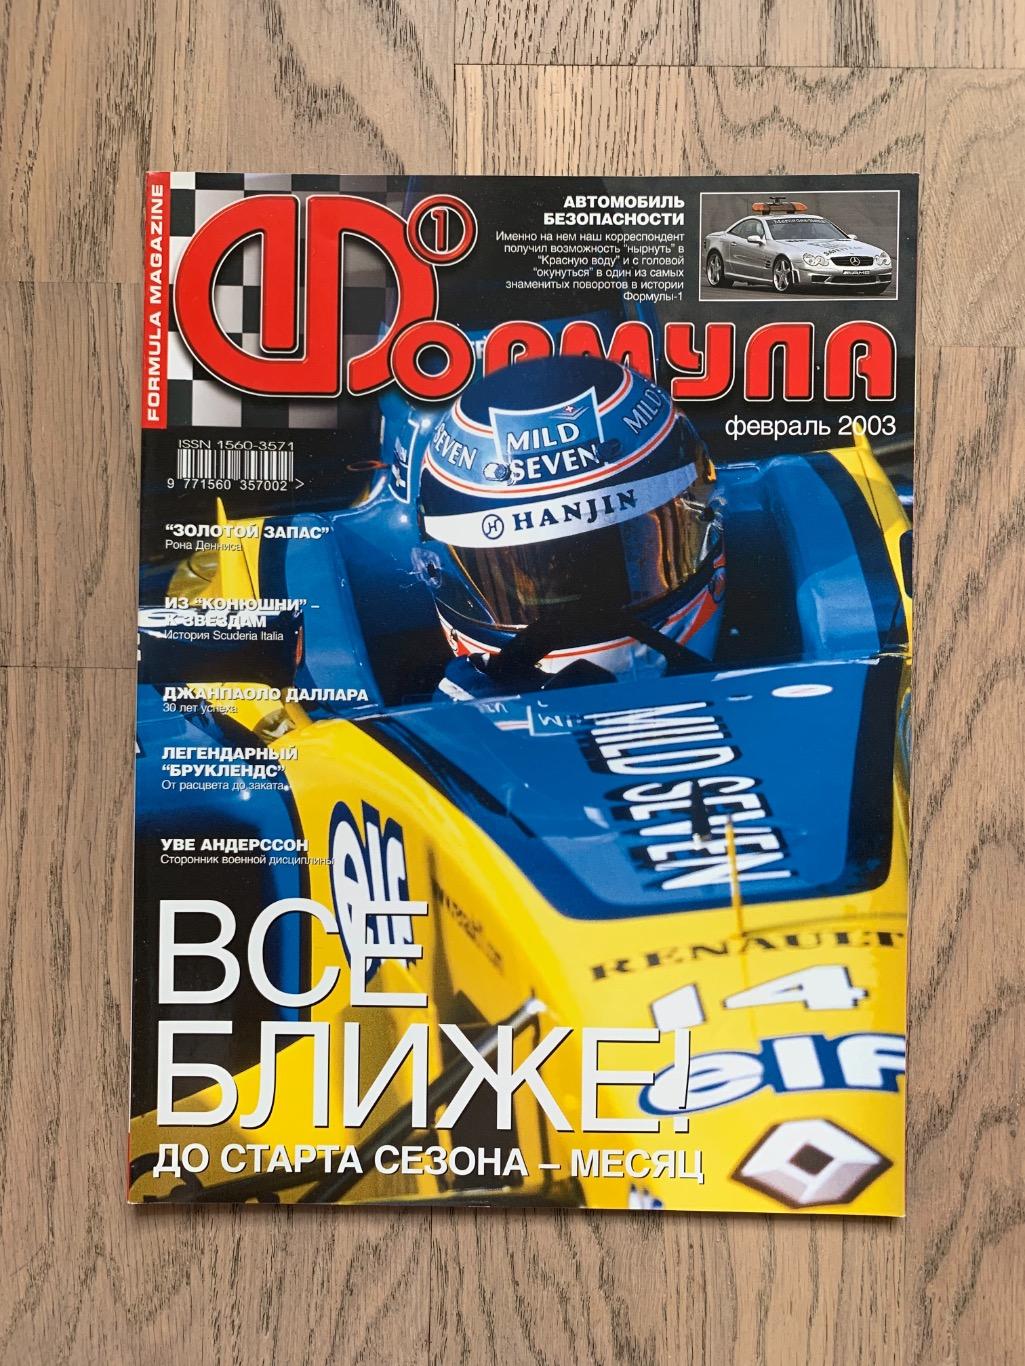 Журнал Формула 1 (Formula Magazine) / февраль 2003